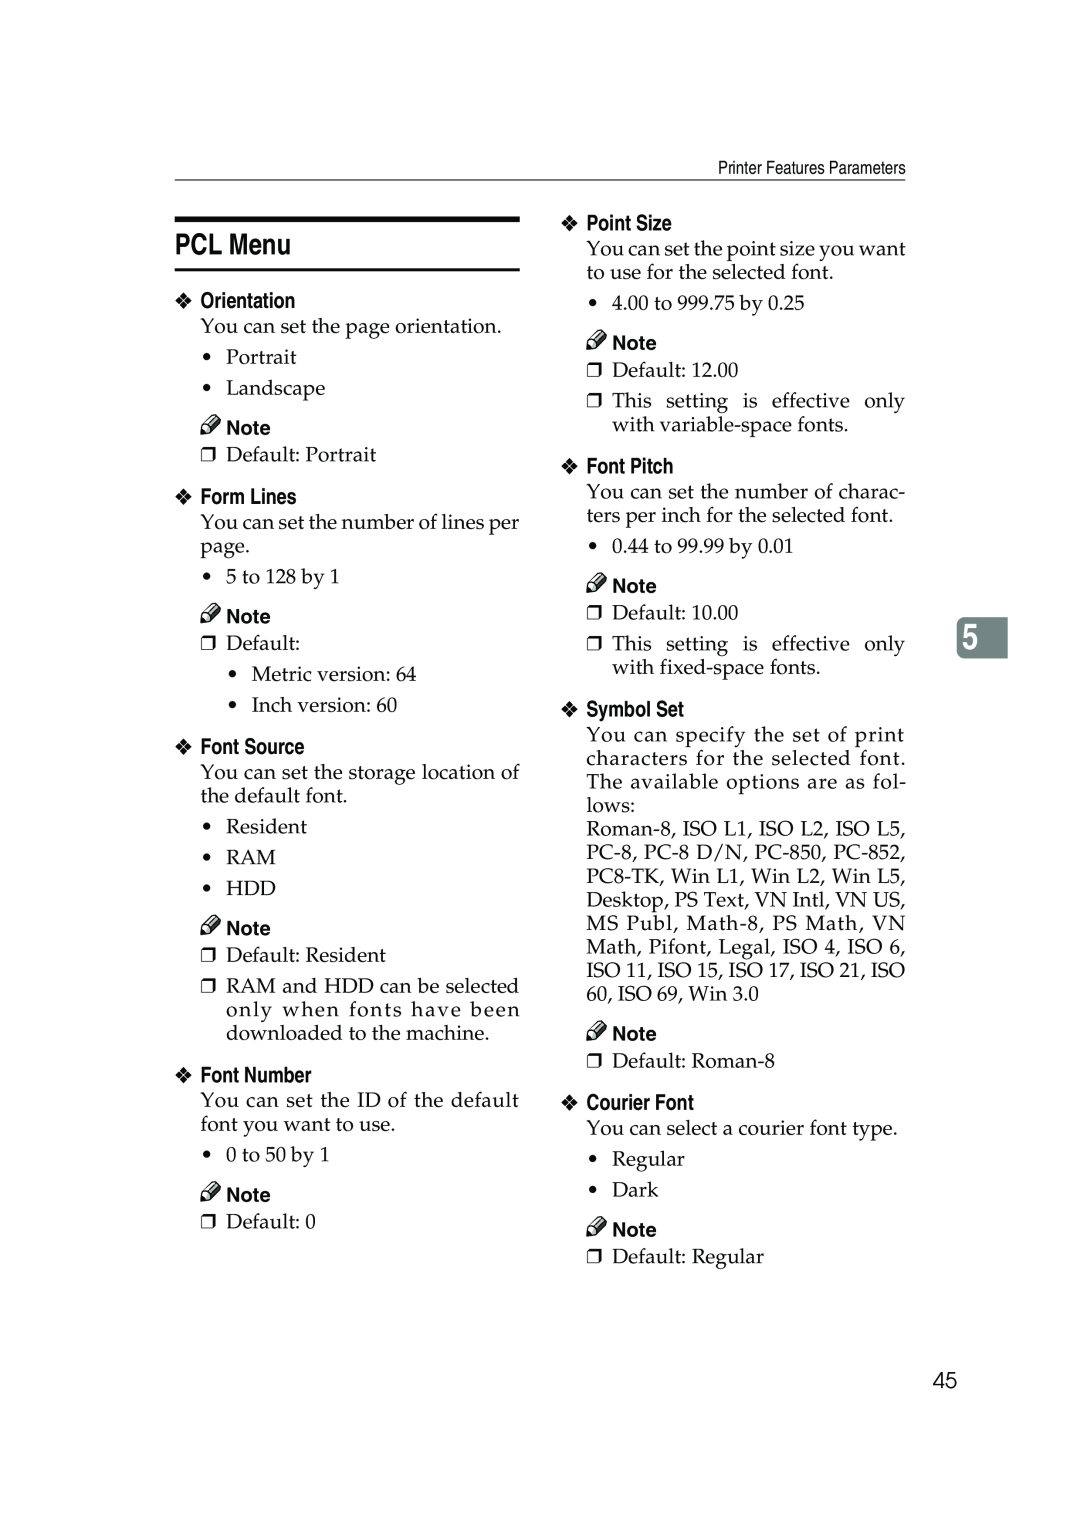 Xerox 2045e PCL Menu, Point Size, Orientation, Form Lines, Font Source, Font Number, Font Pitch, Symbol Set, Courier Font 